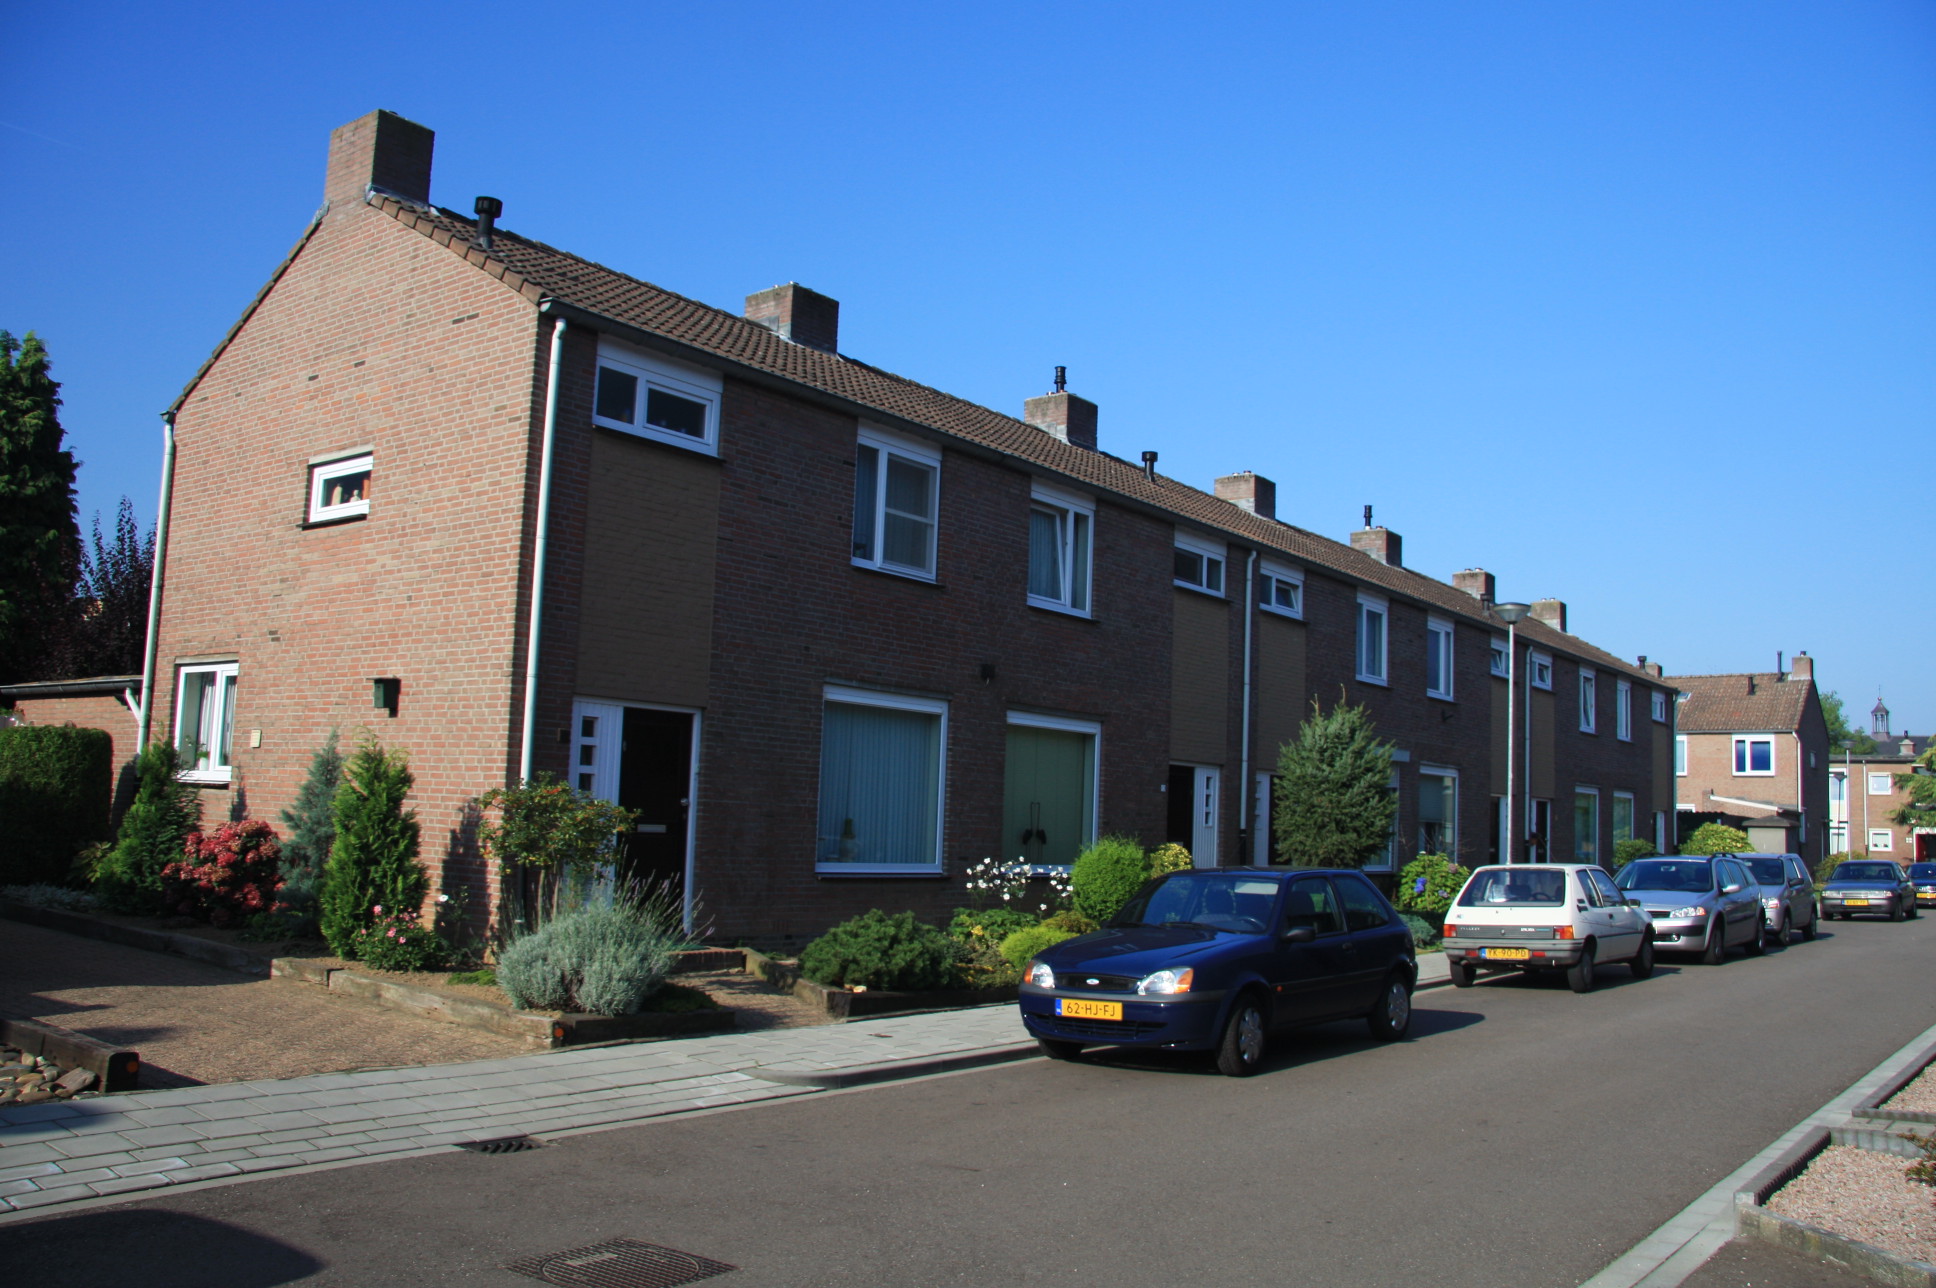 Paul Rubensstraat 6, 6181 AV Elsloo, Nederland